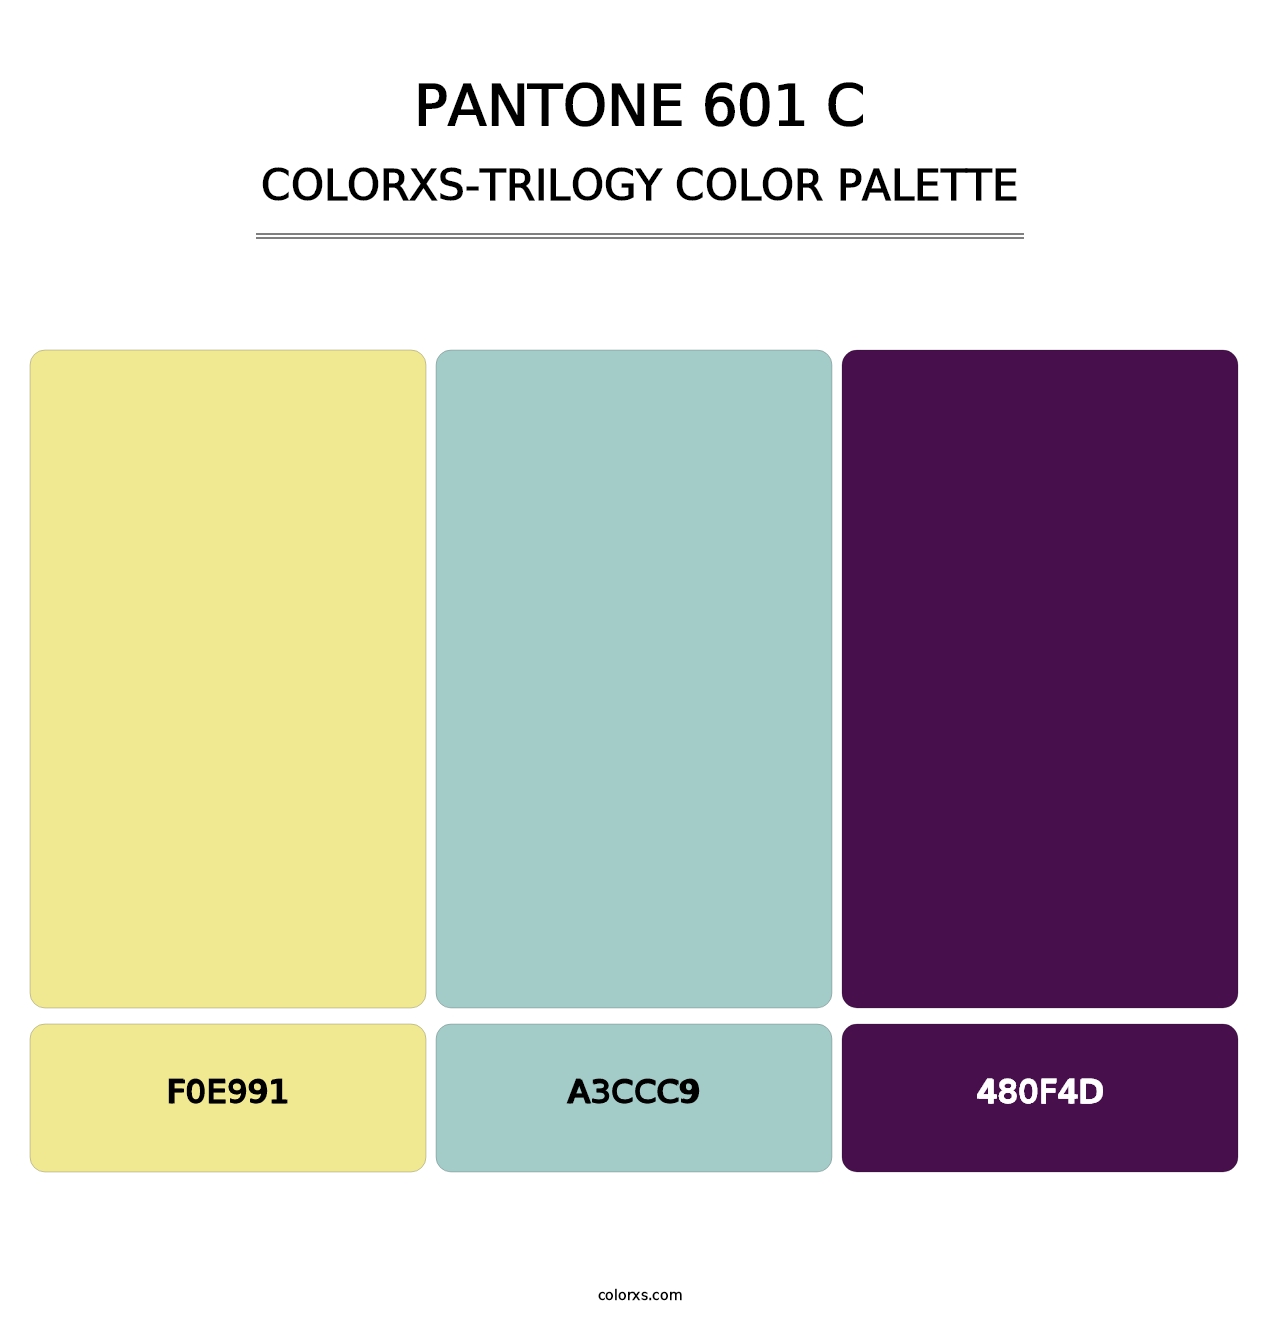 PANTONE 601 C - Colorxs Trilogy Palette